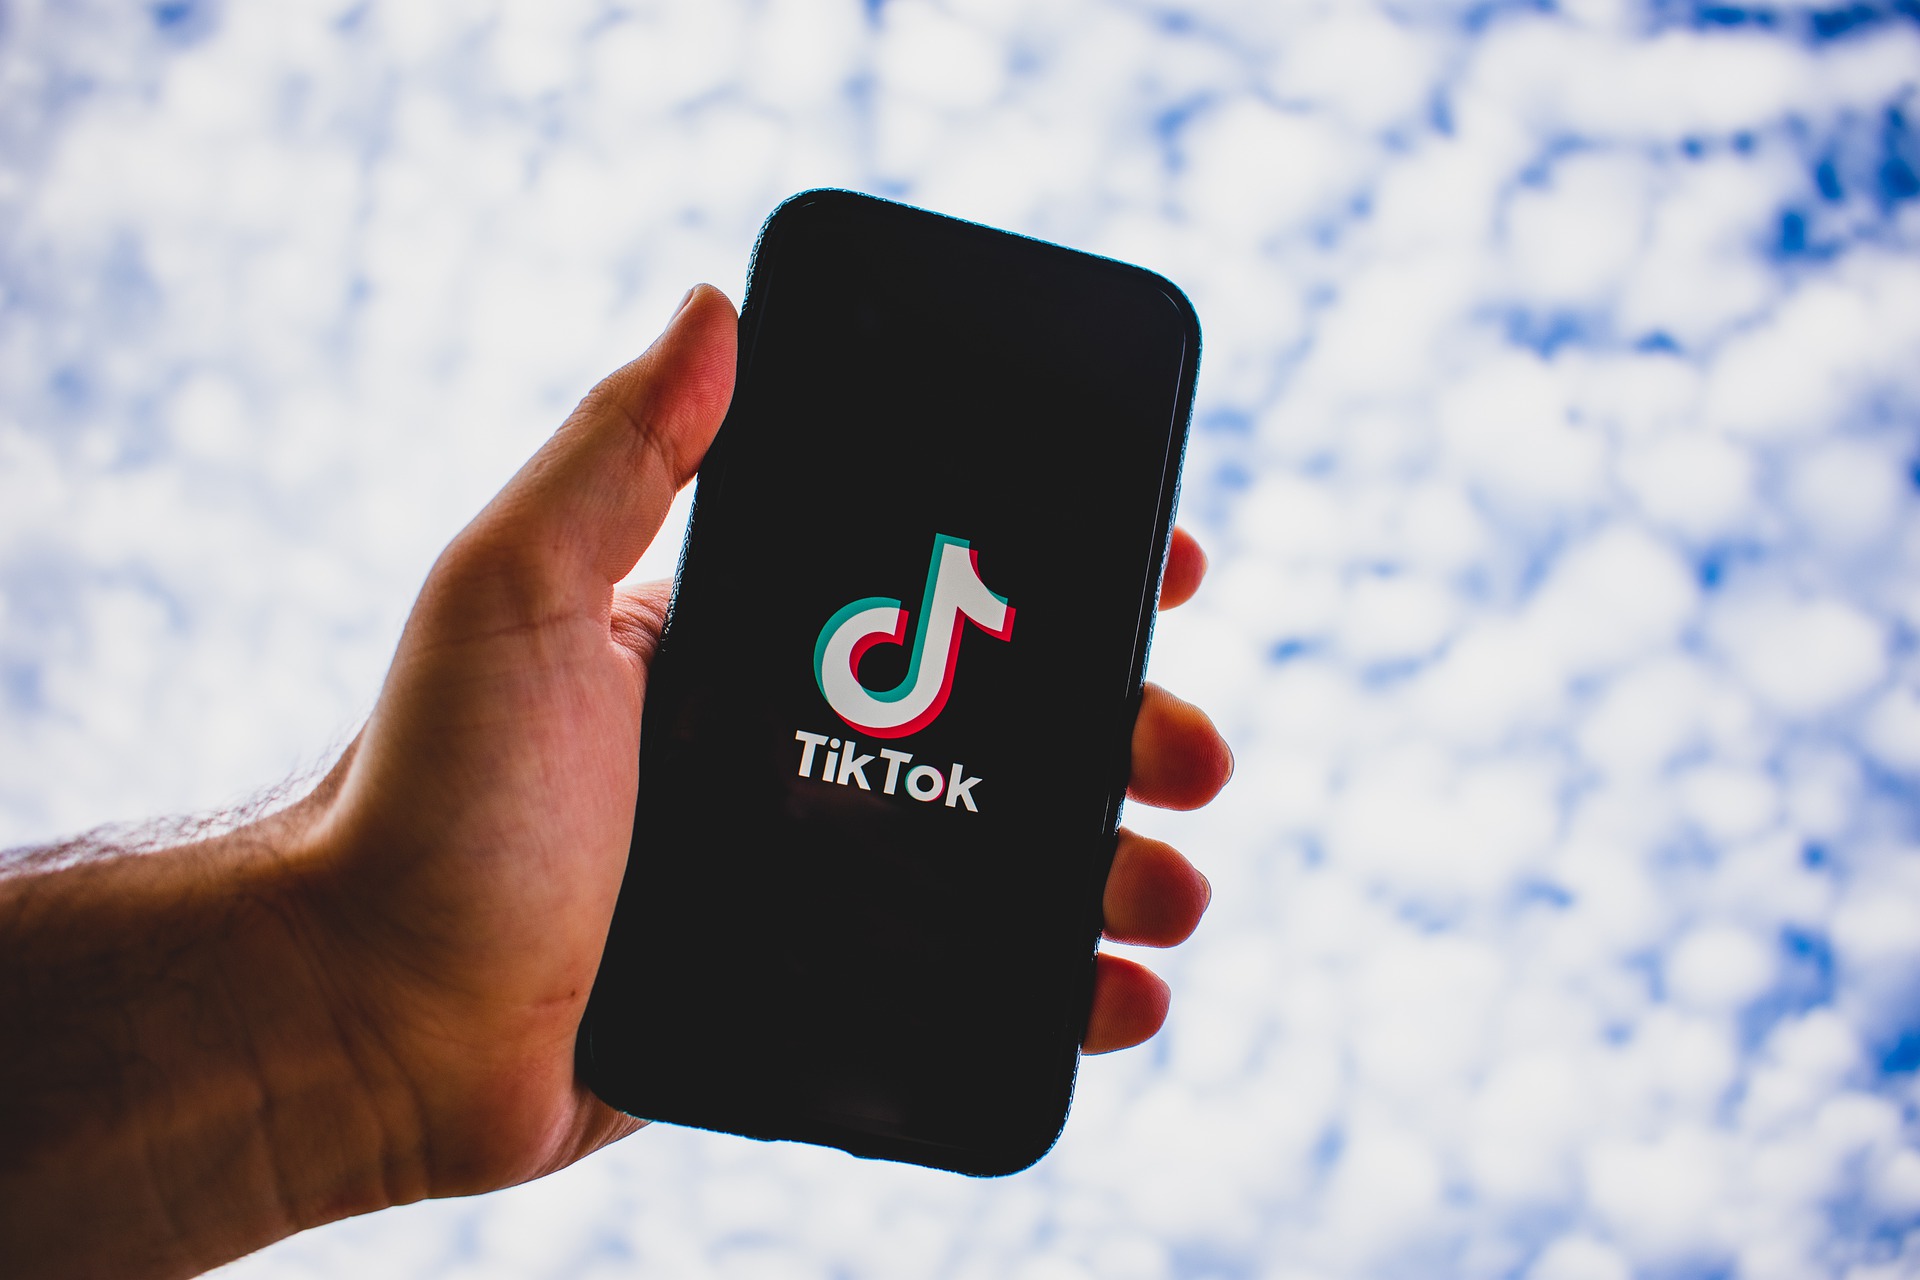 Usuarios se alarman por las nuevas políticas de privacidad de TikTok. (Foto Prensa Libre: Pixabay)